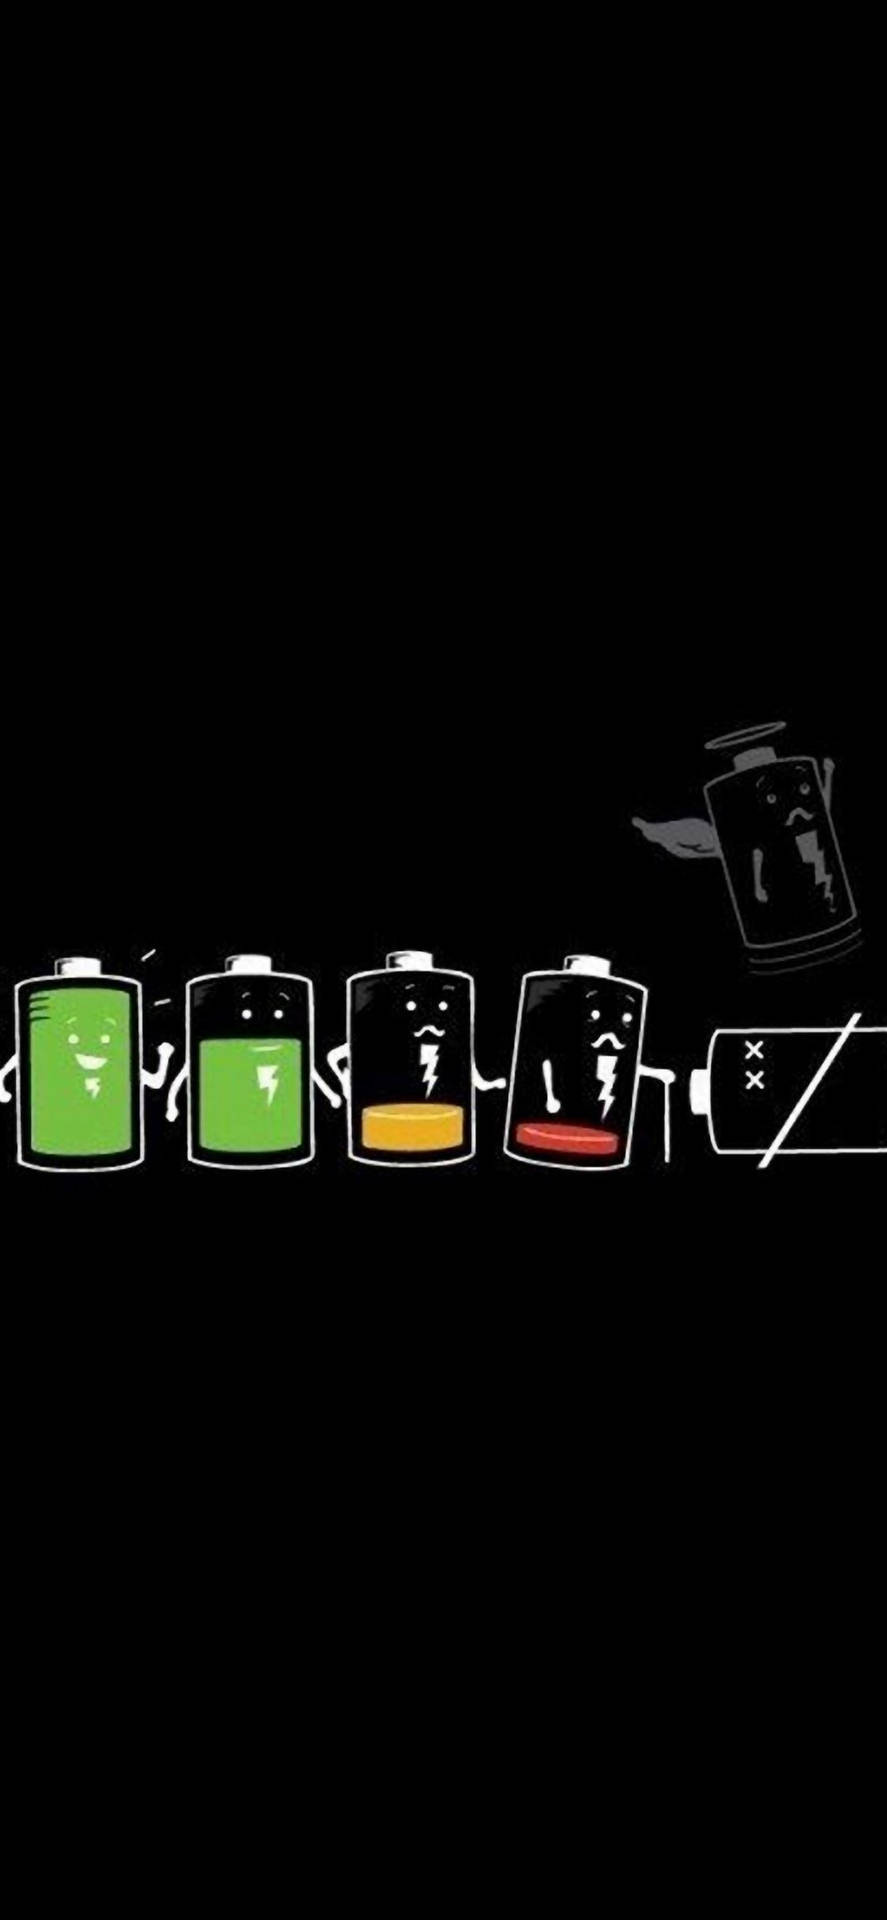 Batterietslivscykel Iphone Dark. Wallpaper